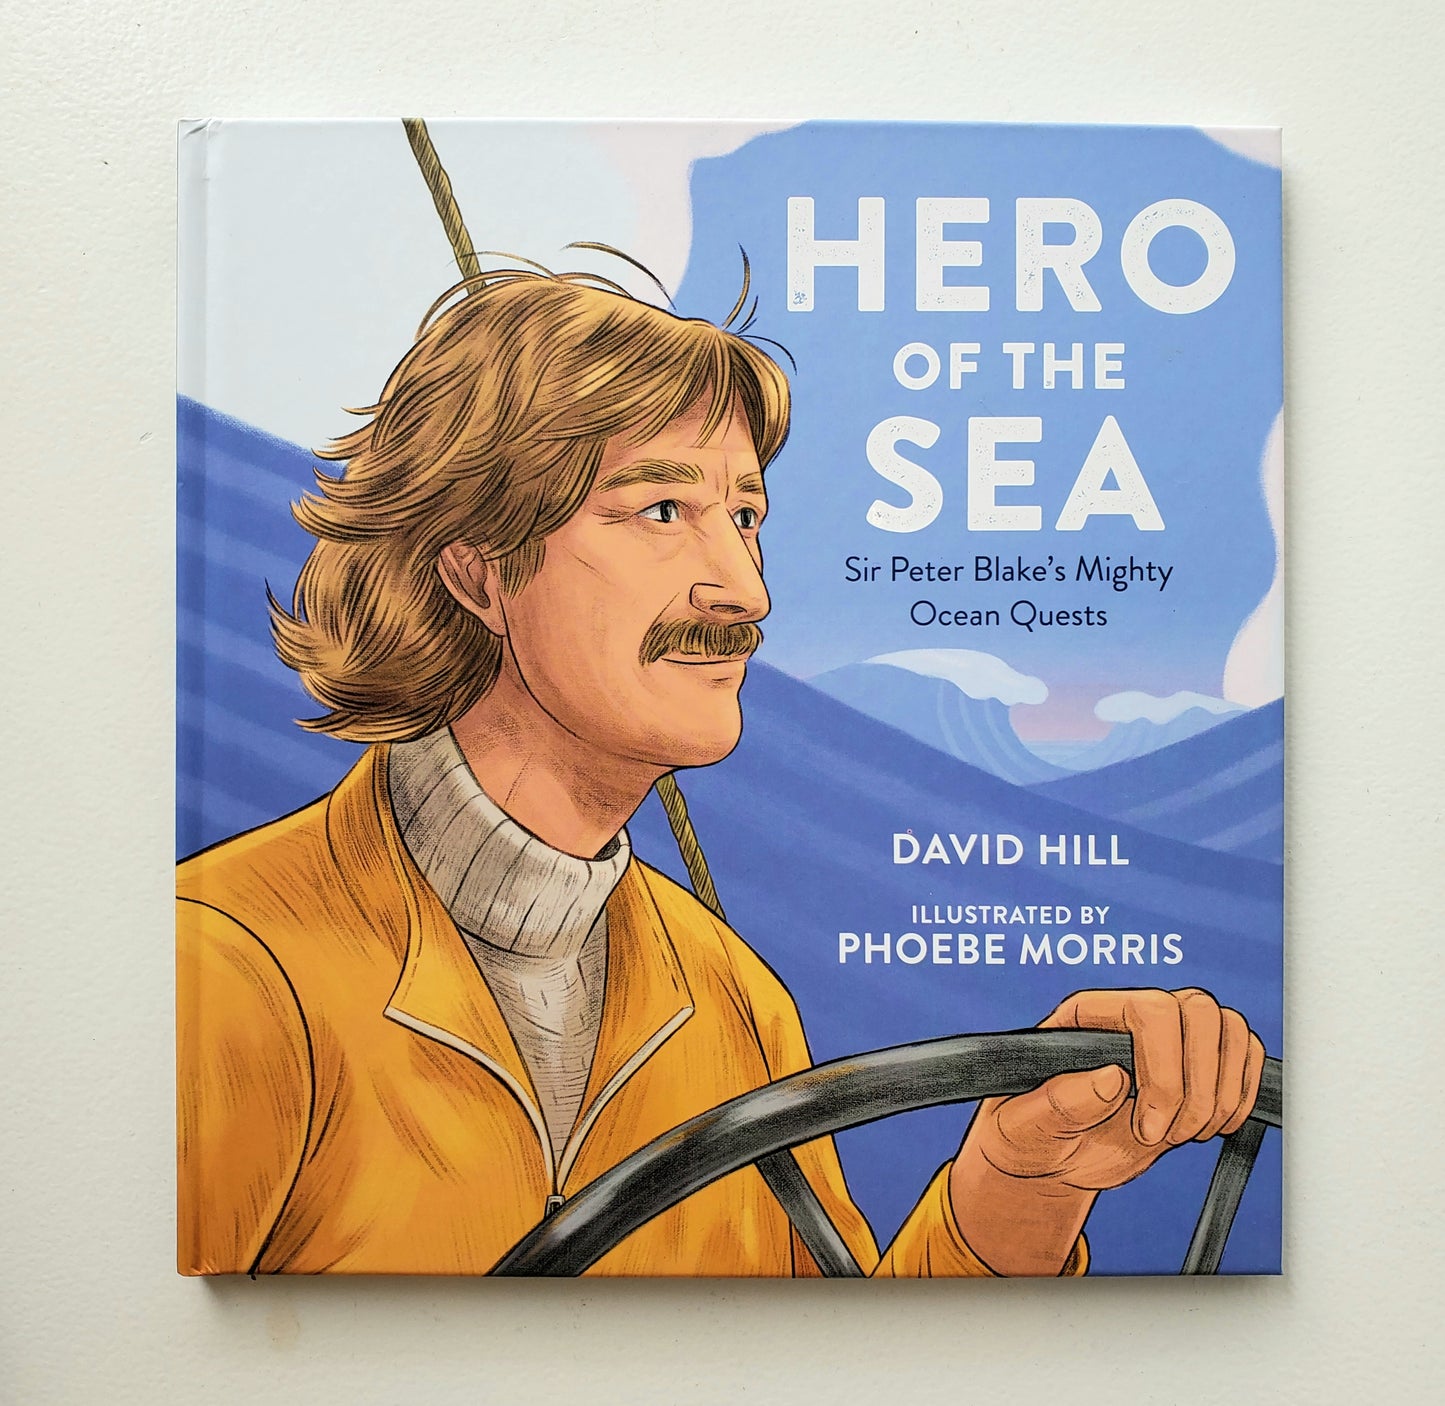 Hero of the Sea - Sir Peter Blake's Mighty Ocean Quests